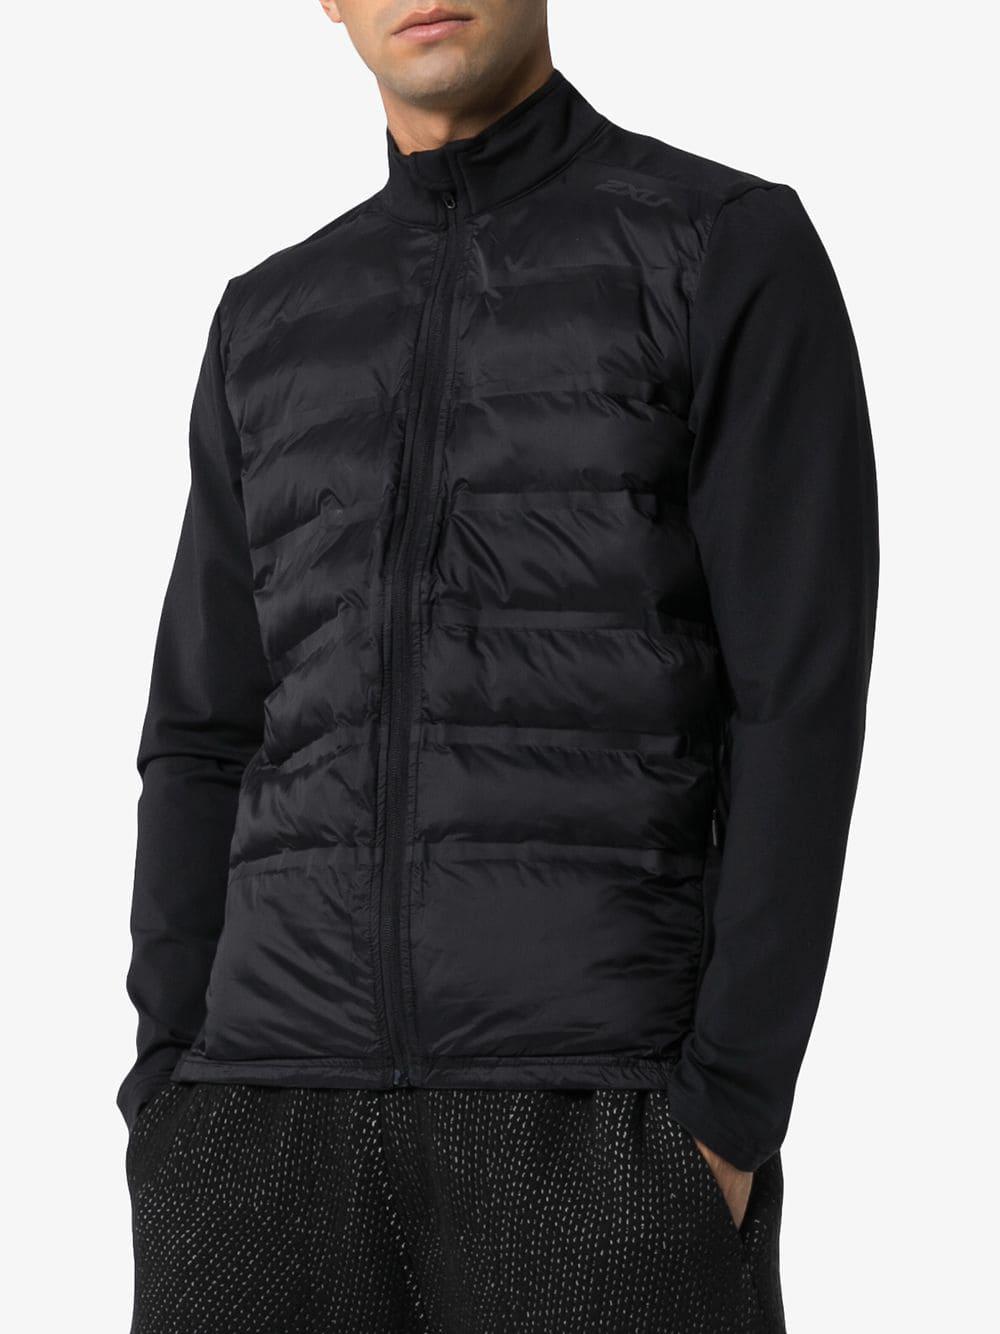 2XU Synthetic Heat Half-puffer Jacket in Black for Men - Lyst